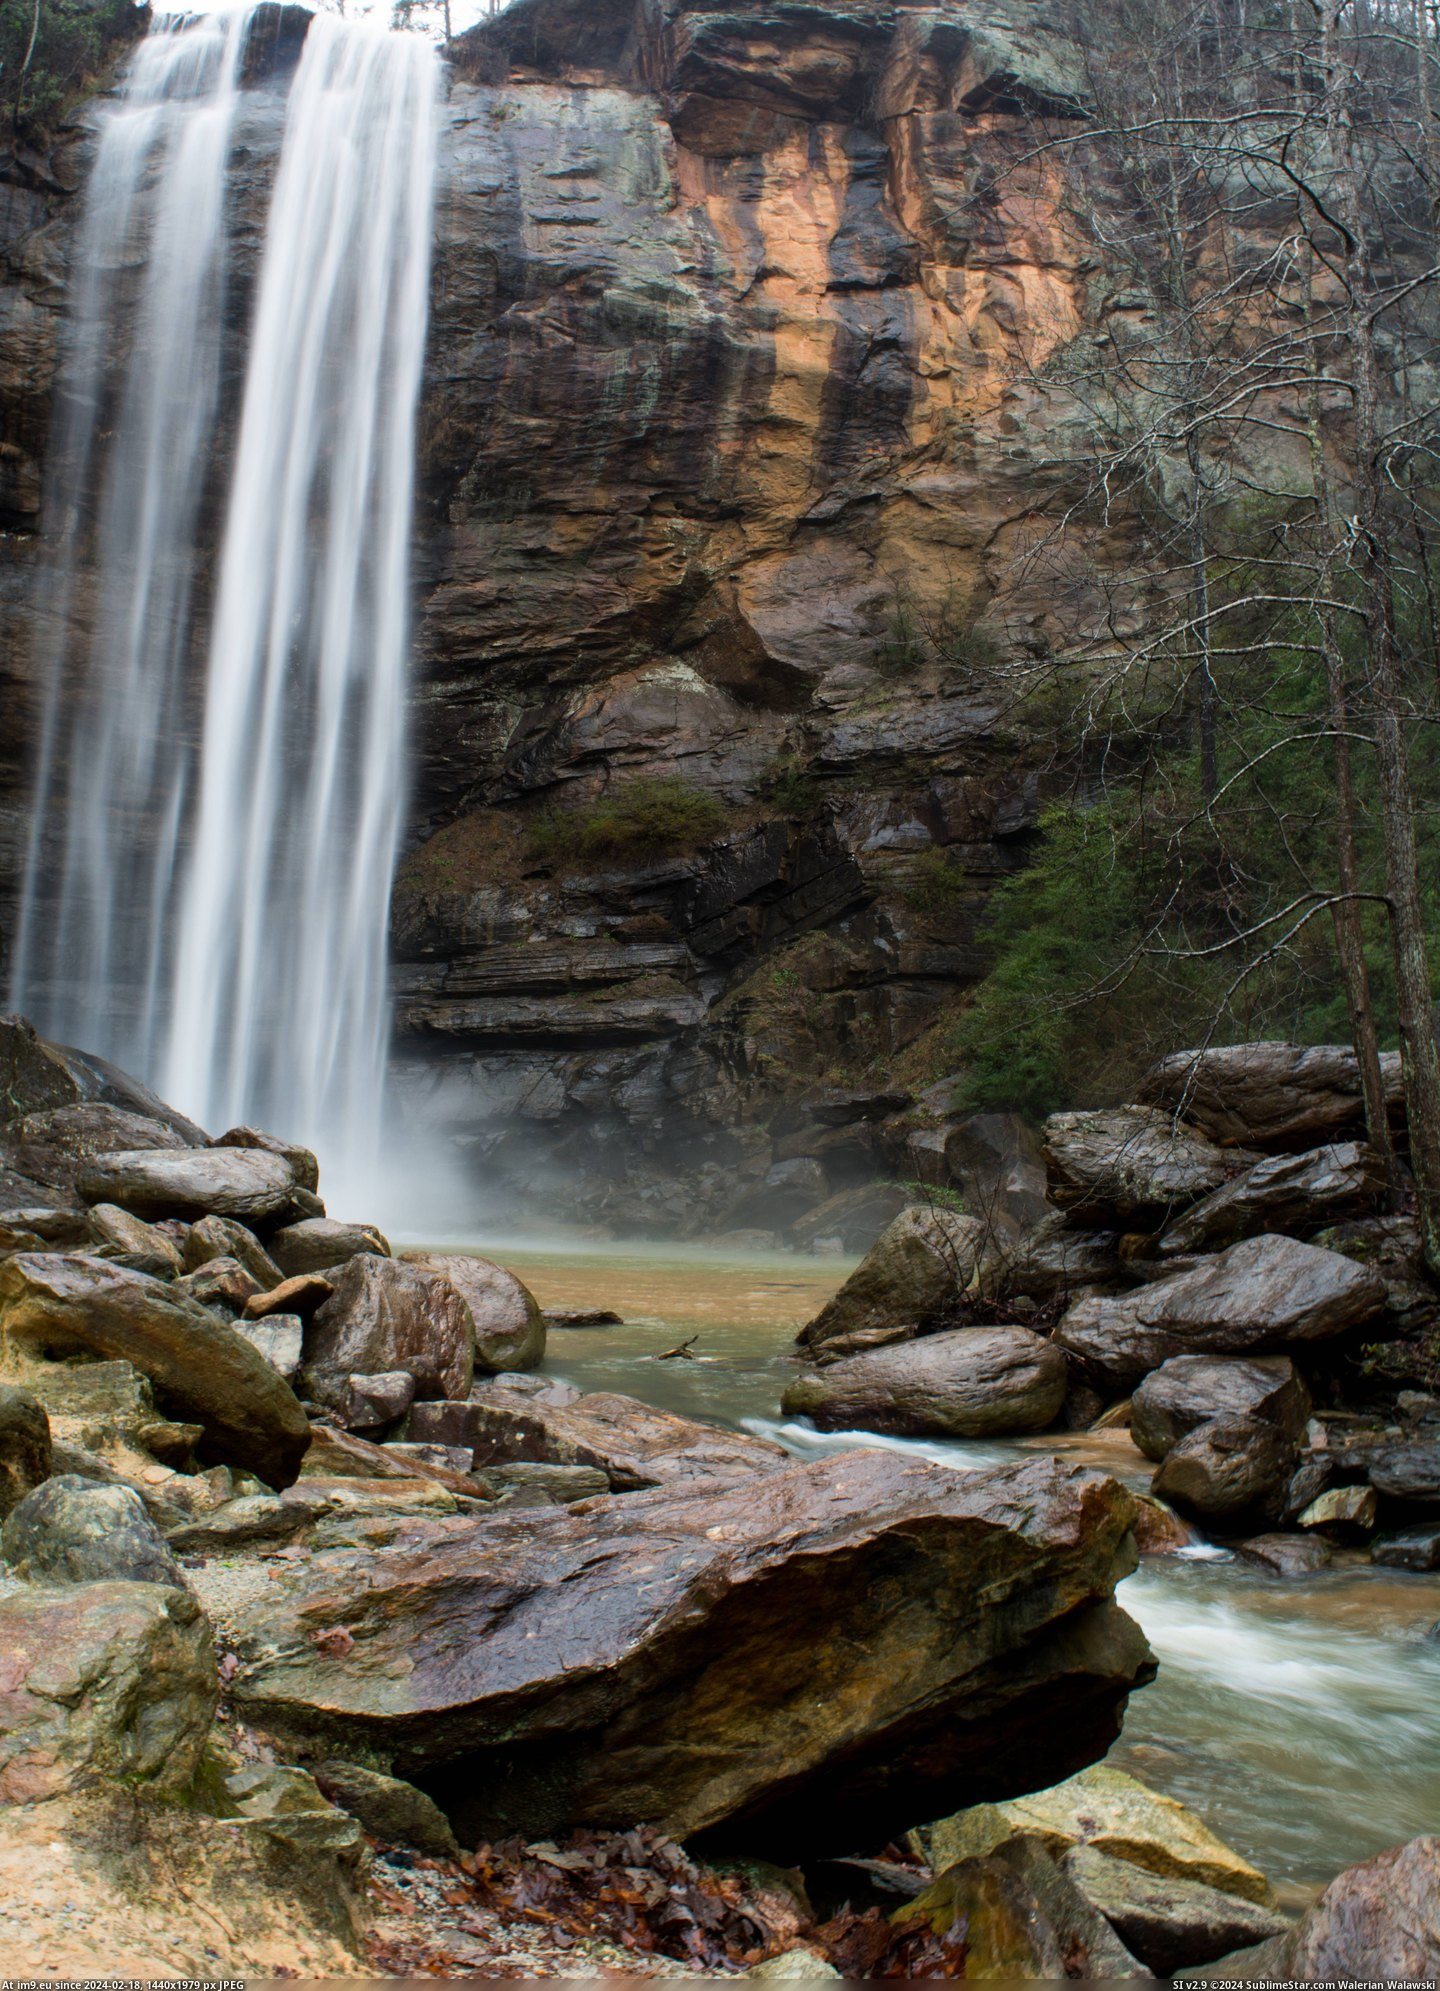 #Falls #Georgia #Usa [Earthporn] Toccoa Falls in Georgia, USA [3923x5403] Pic. (Image of album My r/EARTHPORN favs))